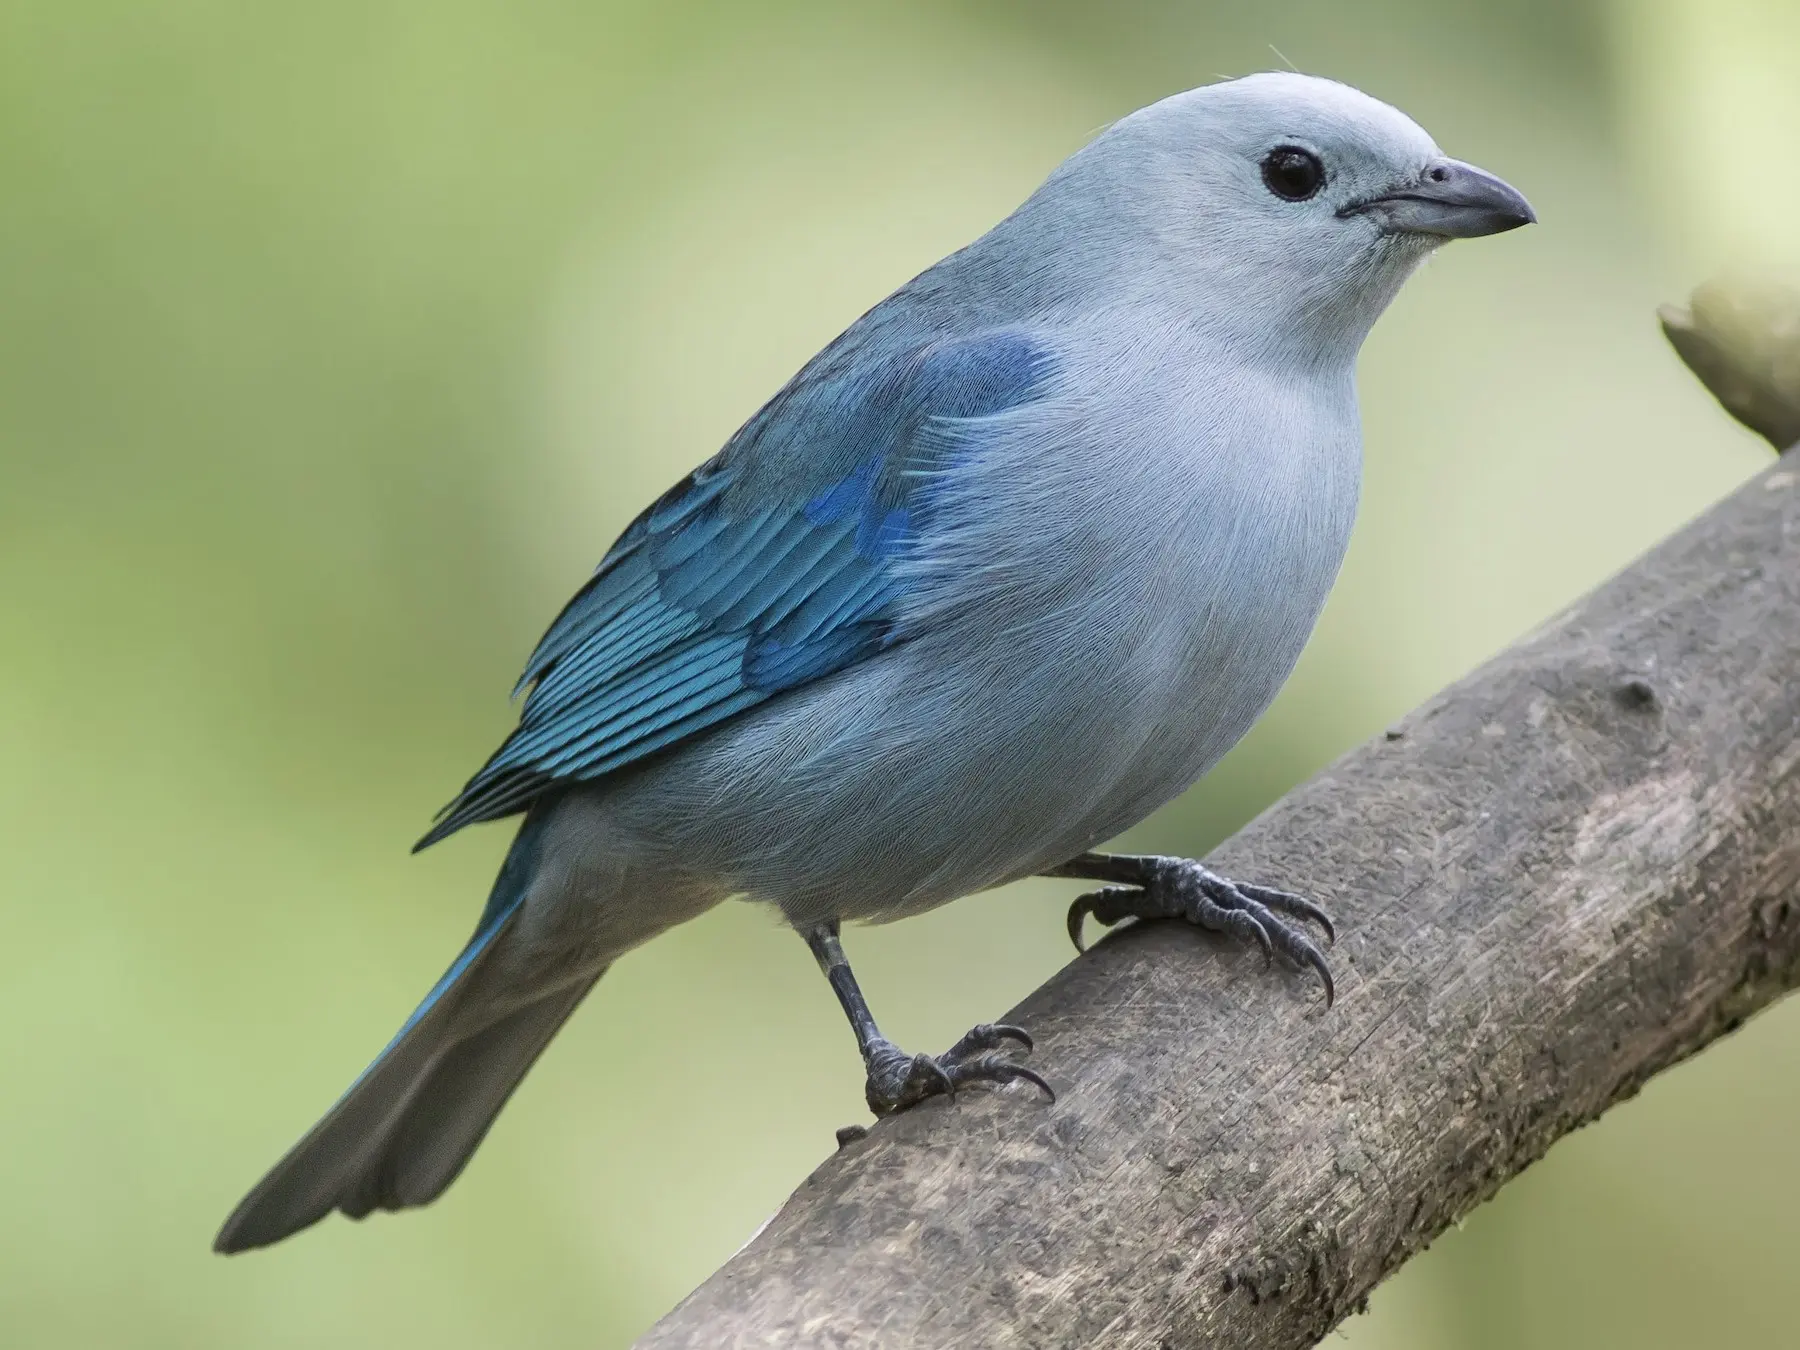 pajaros azulejos - Cuántas especies de pájaros azulejos hay